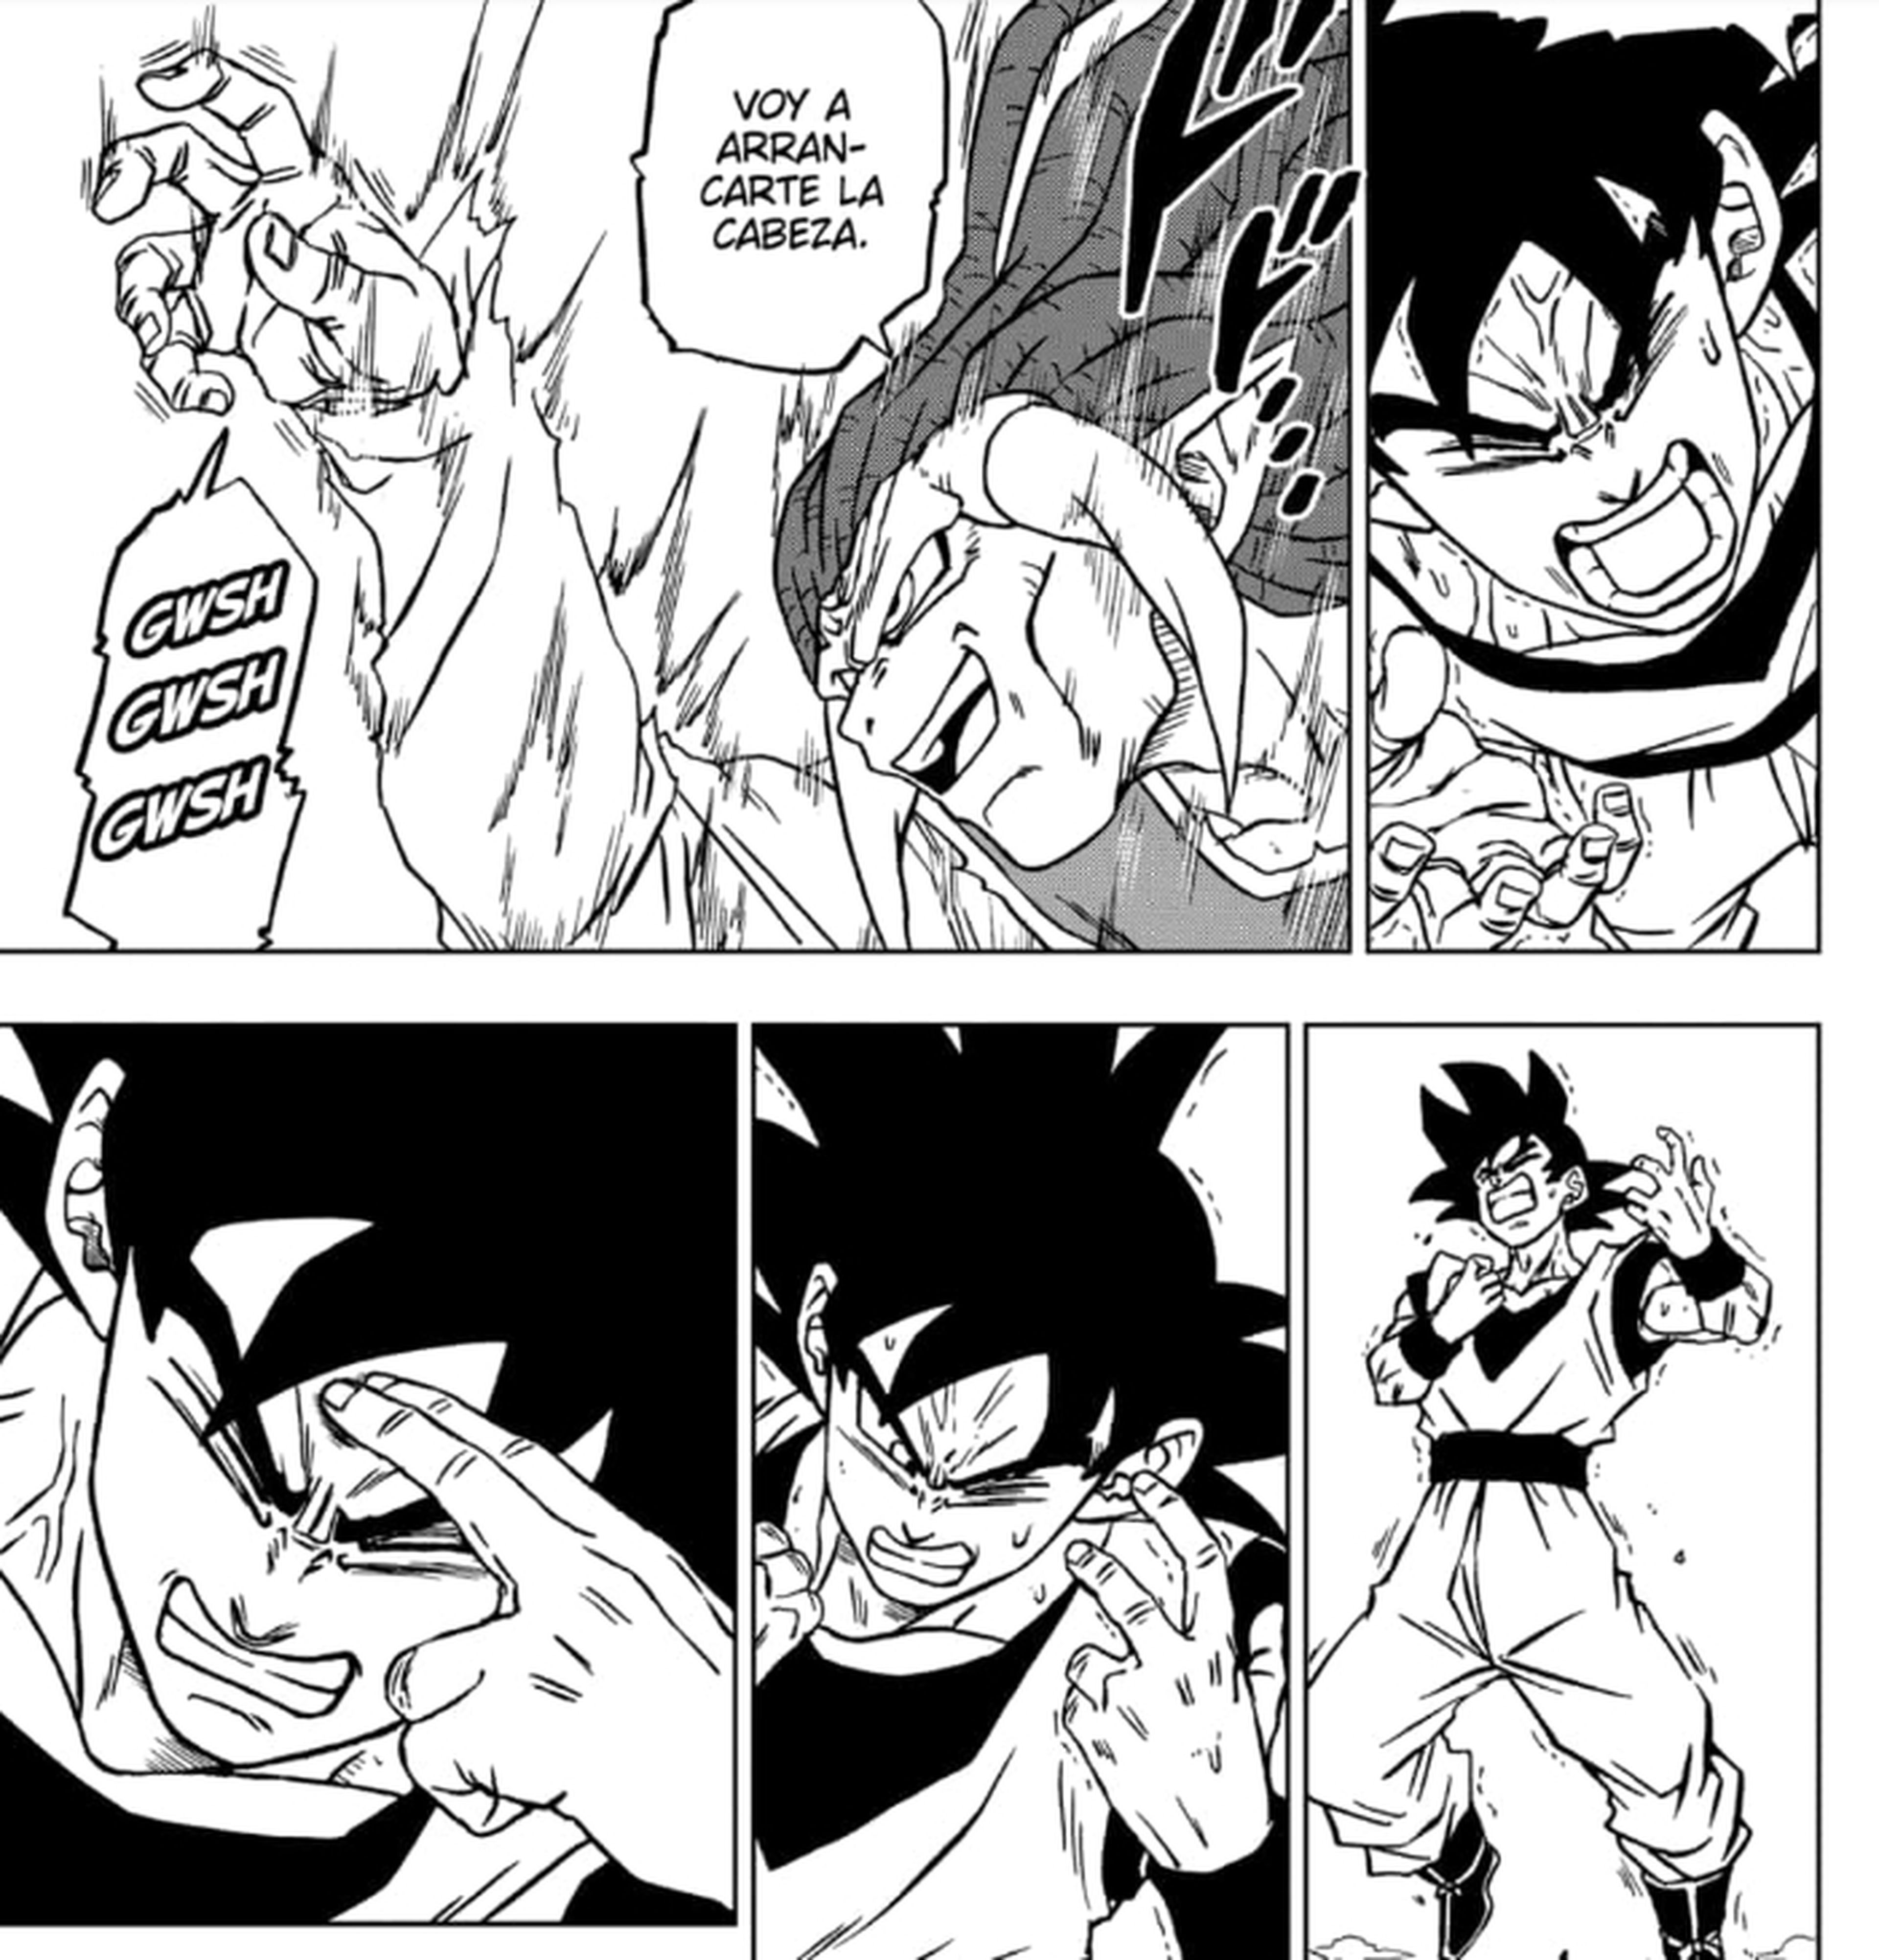 Dragon Ball Super - Crítica del nuevo capítulo de la serie en el que Goku desata un poder gigante y colosal. ¿El final de la saga?